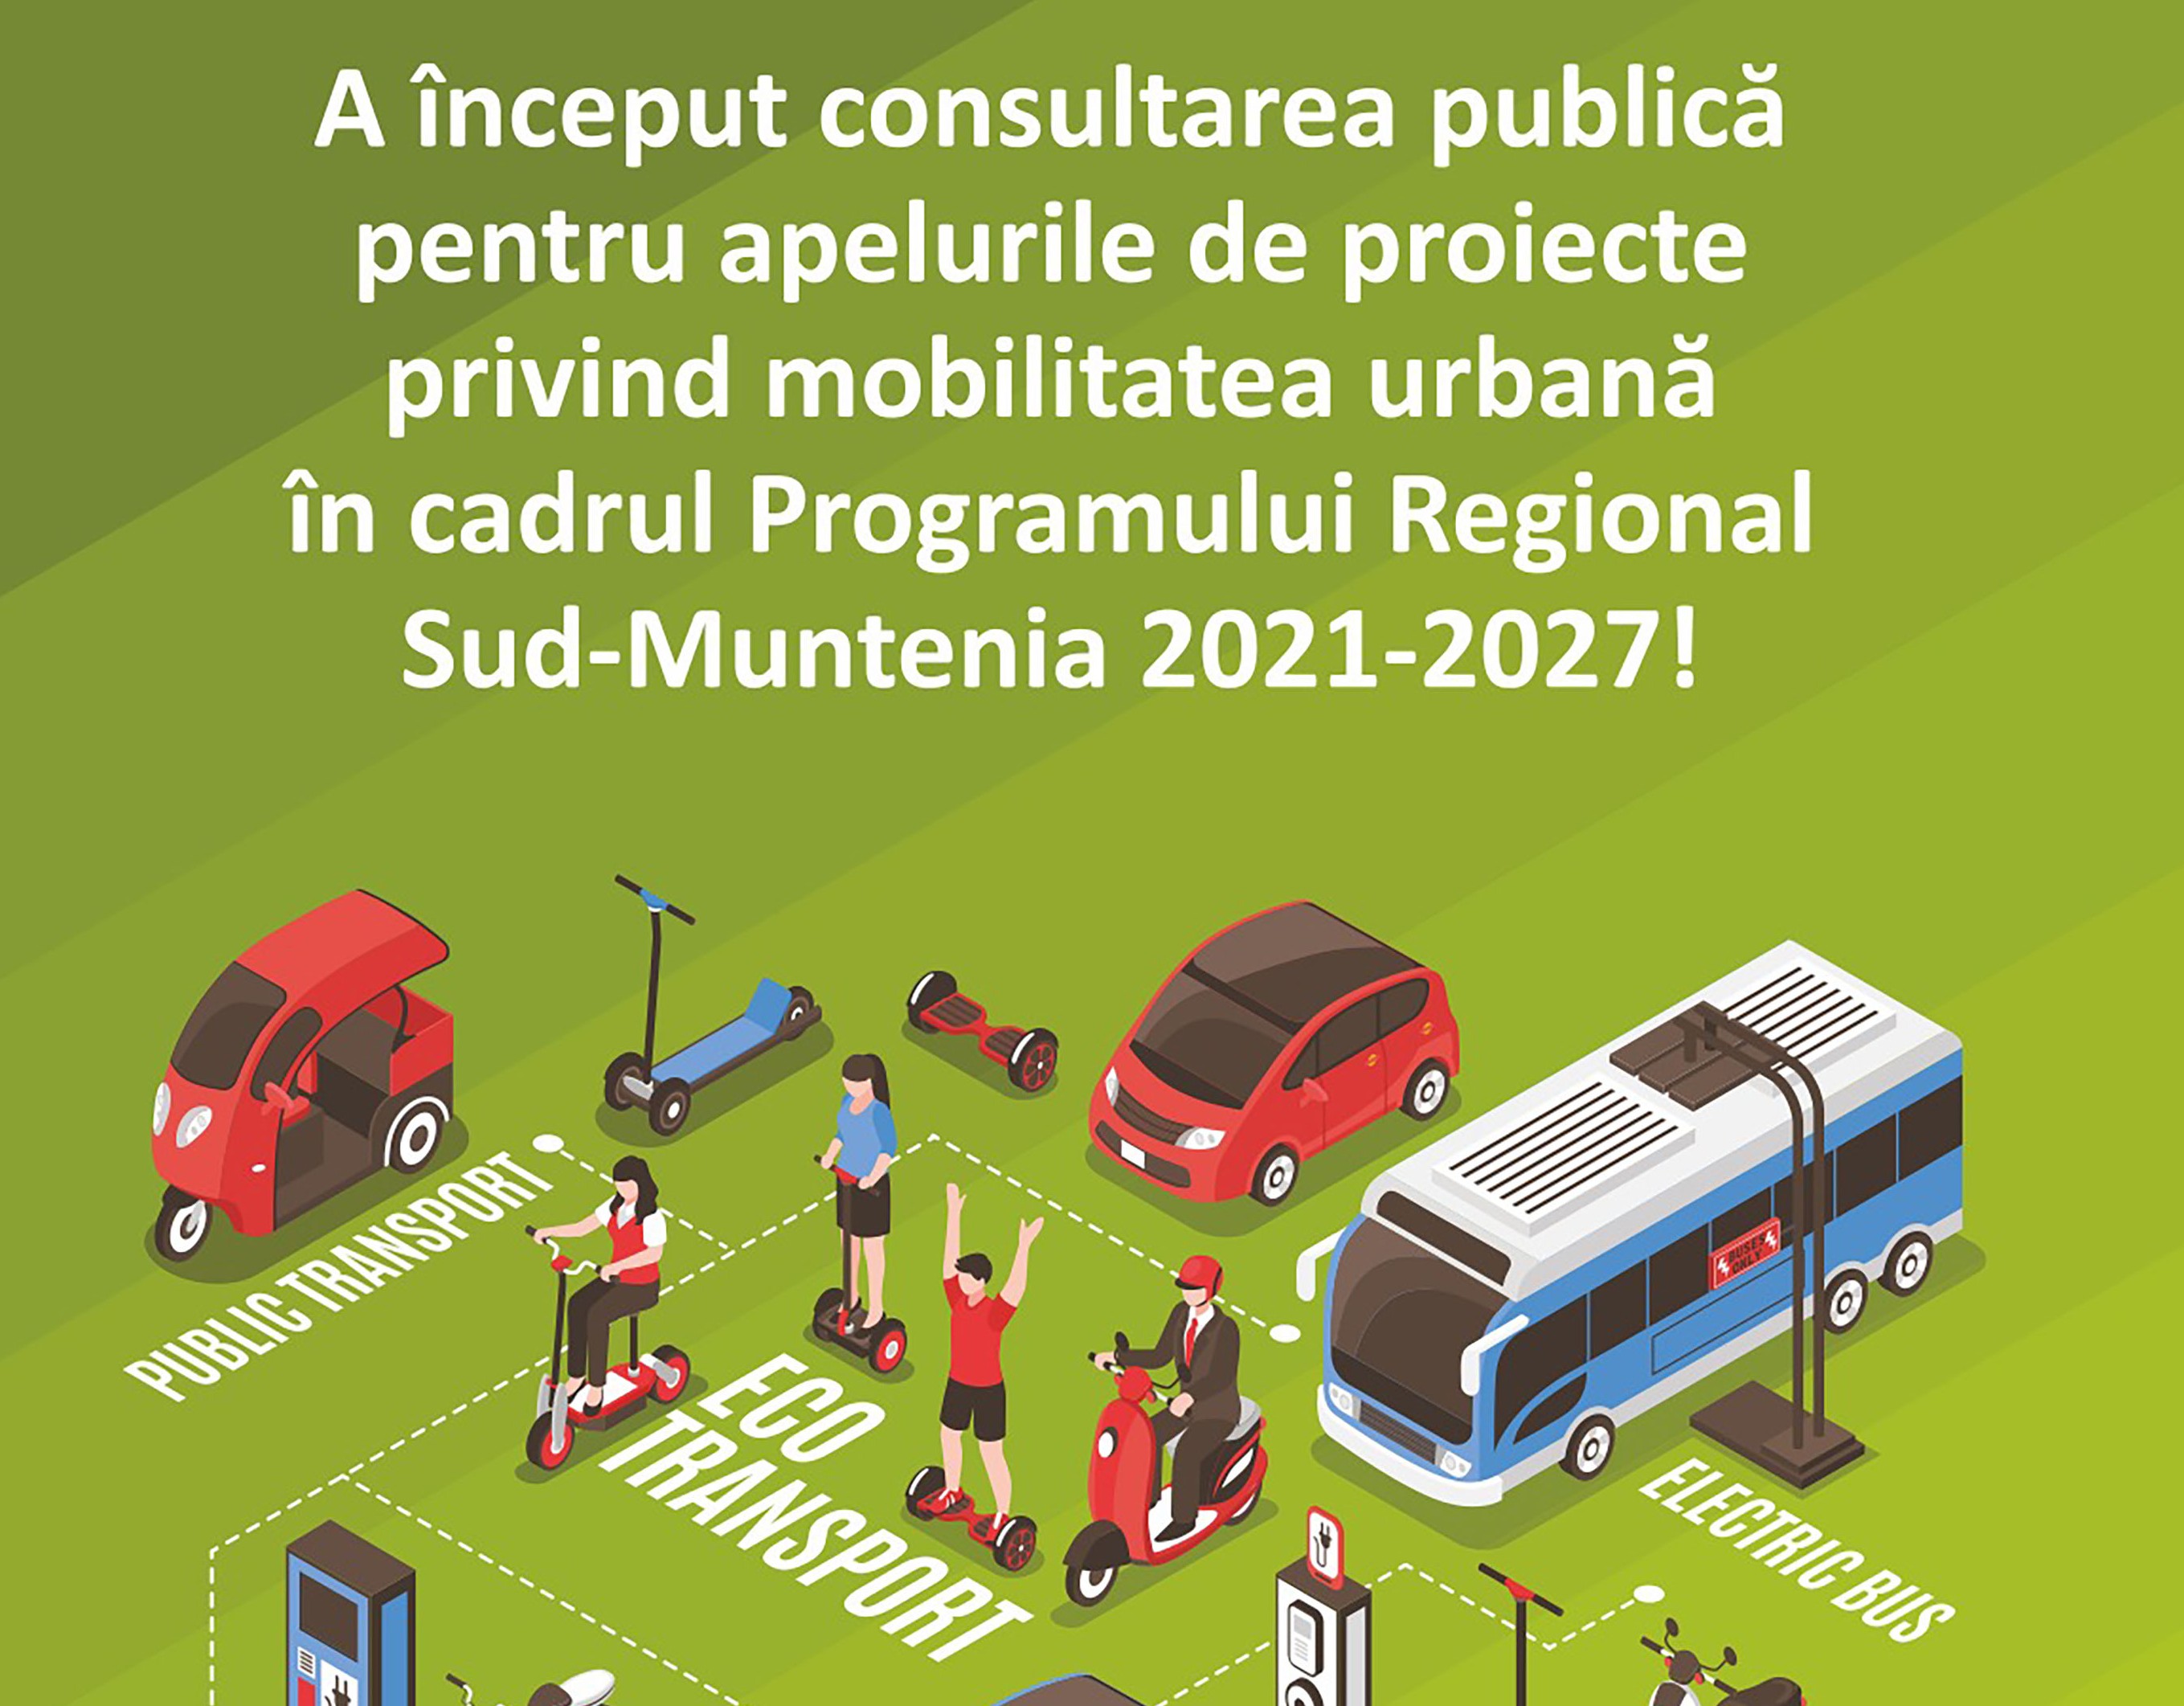 Ghidurile specifice pentru mobilitate urbană, lansate în consultare publică